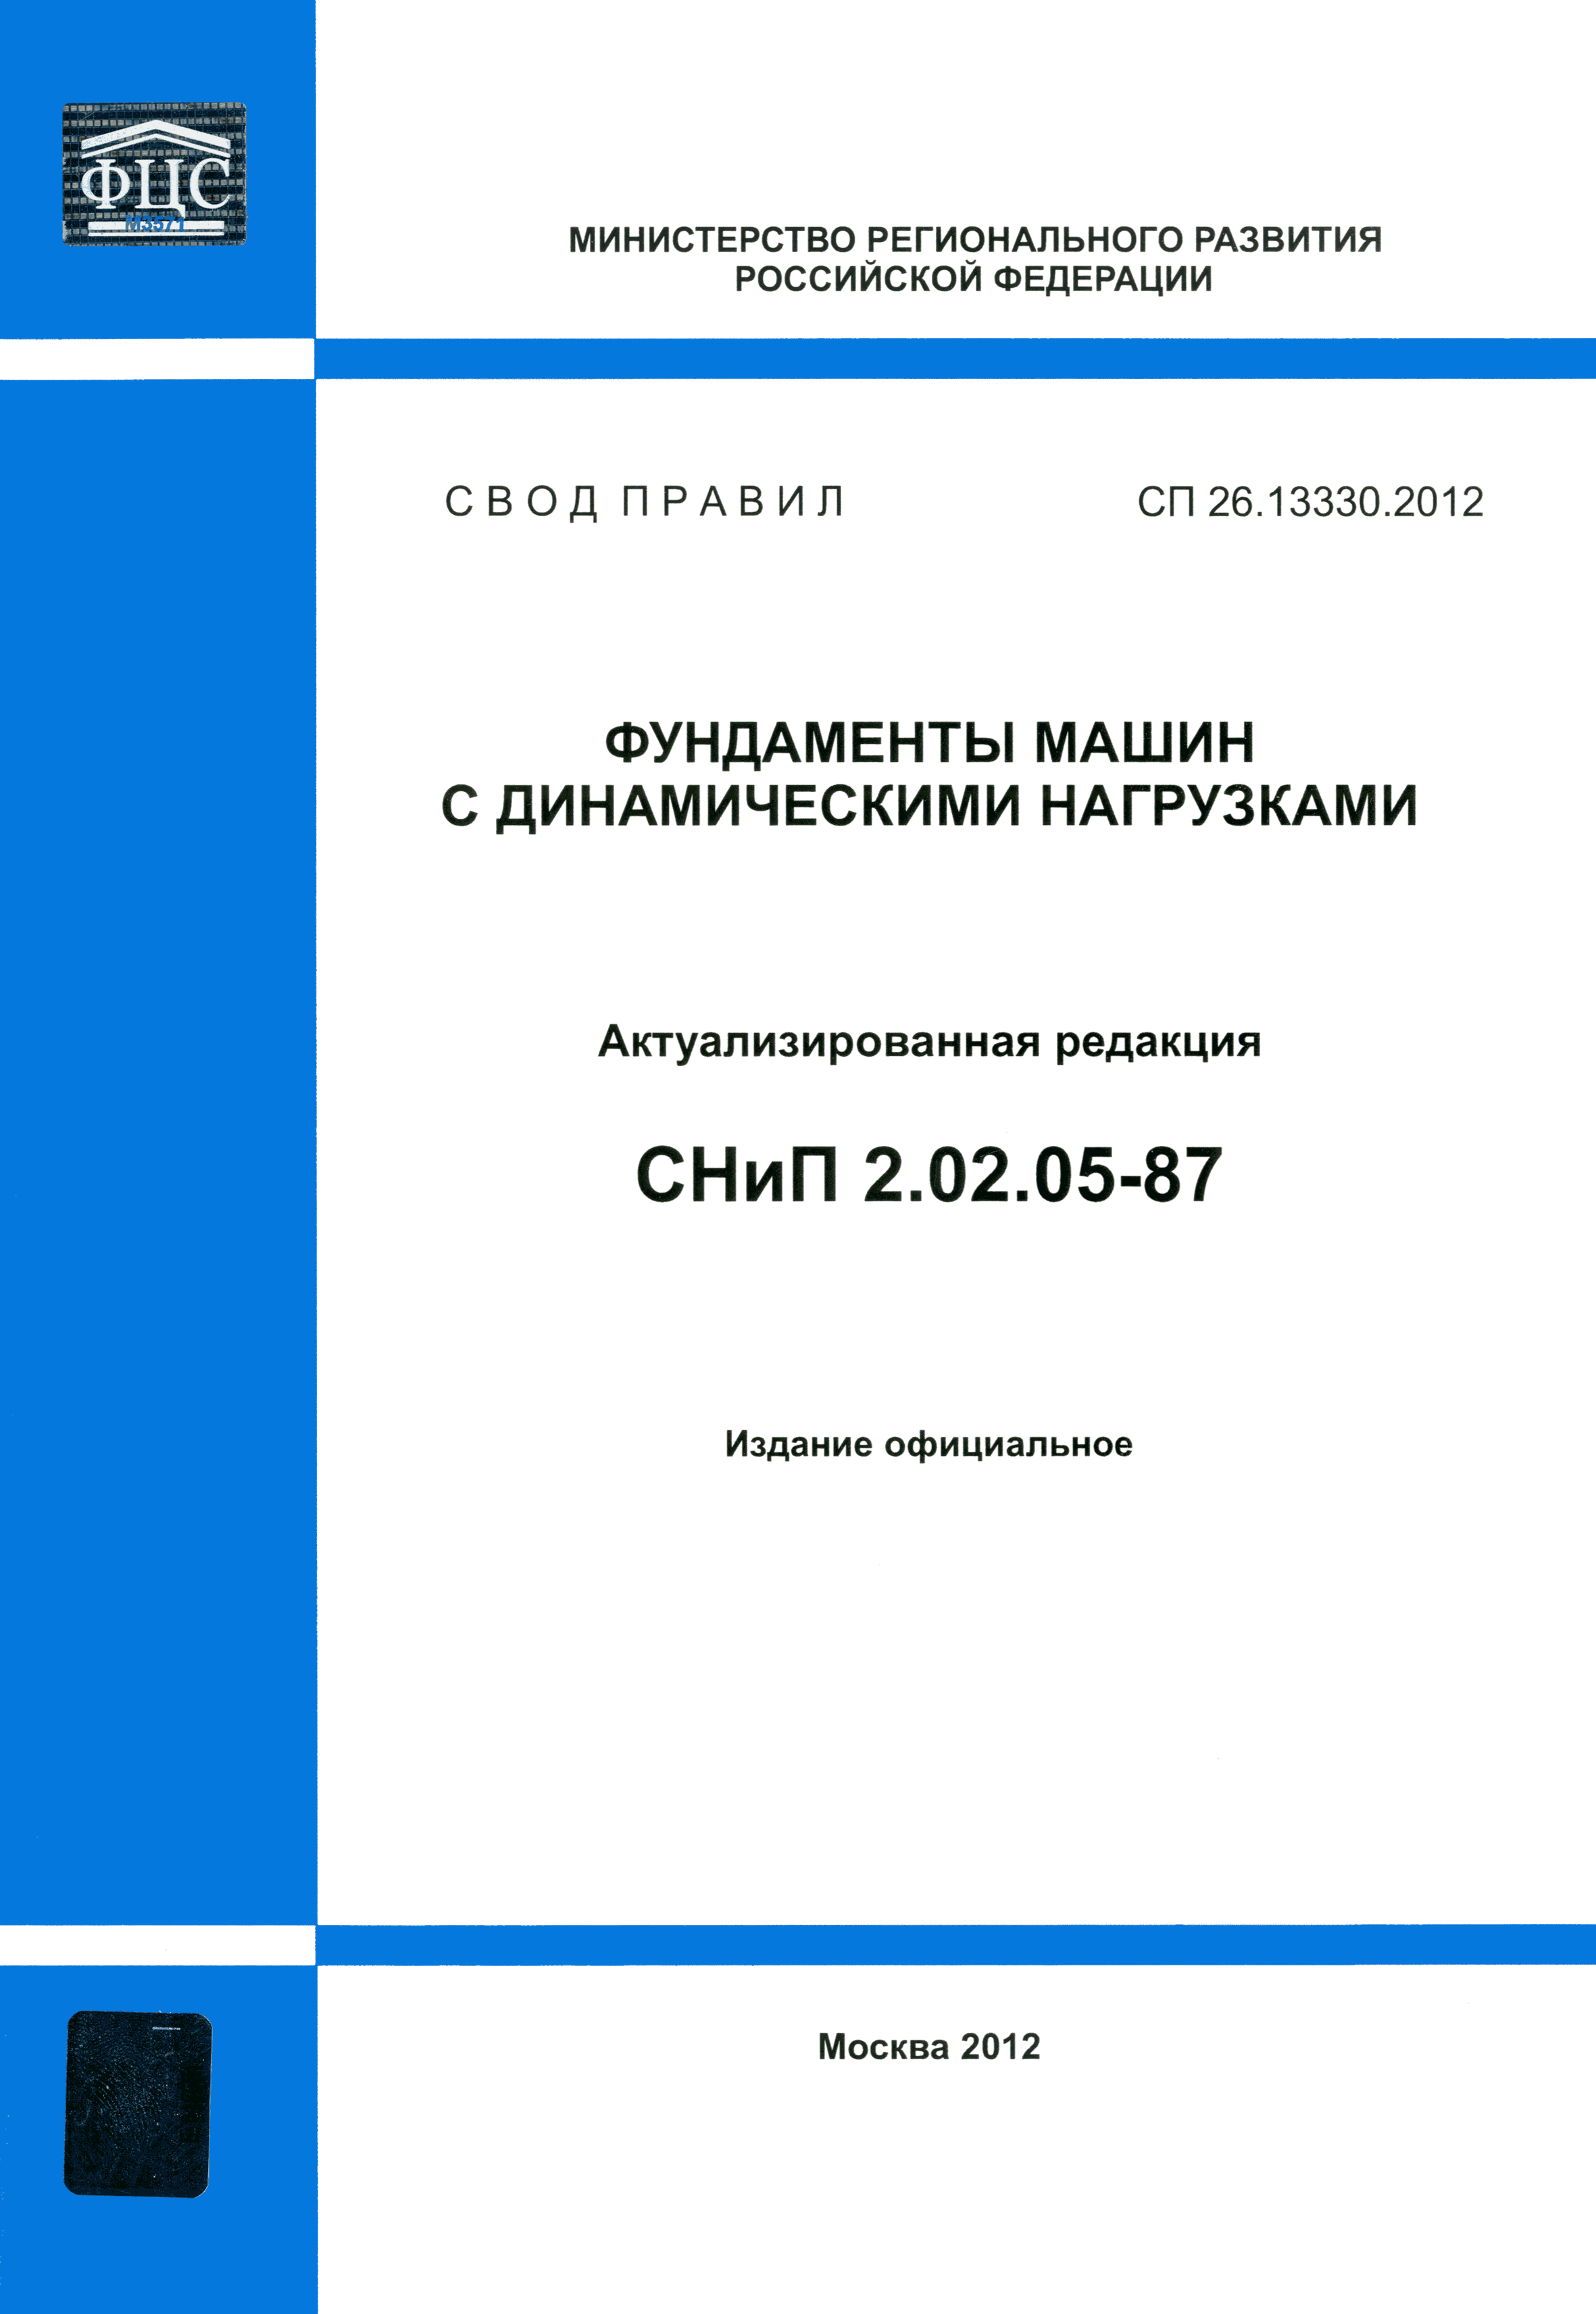 СП 26.13330.2012